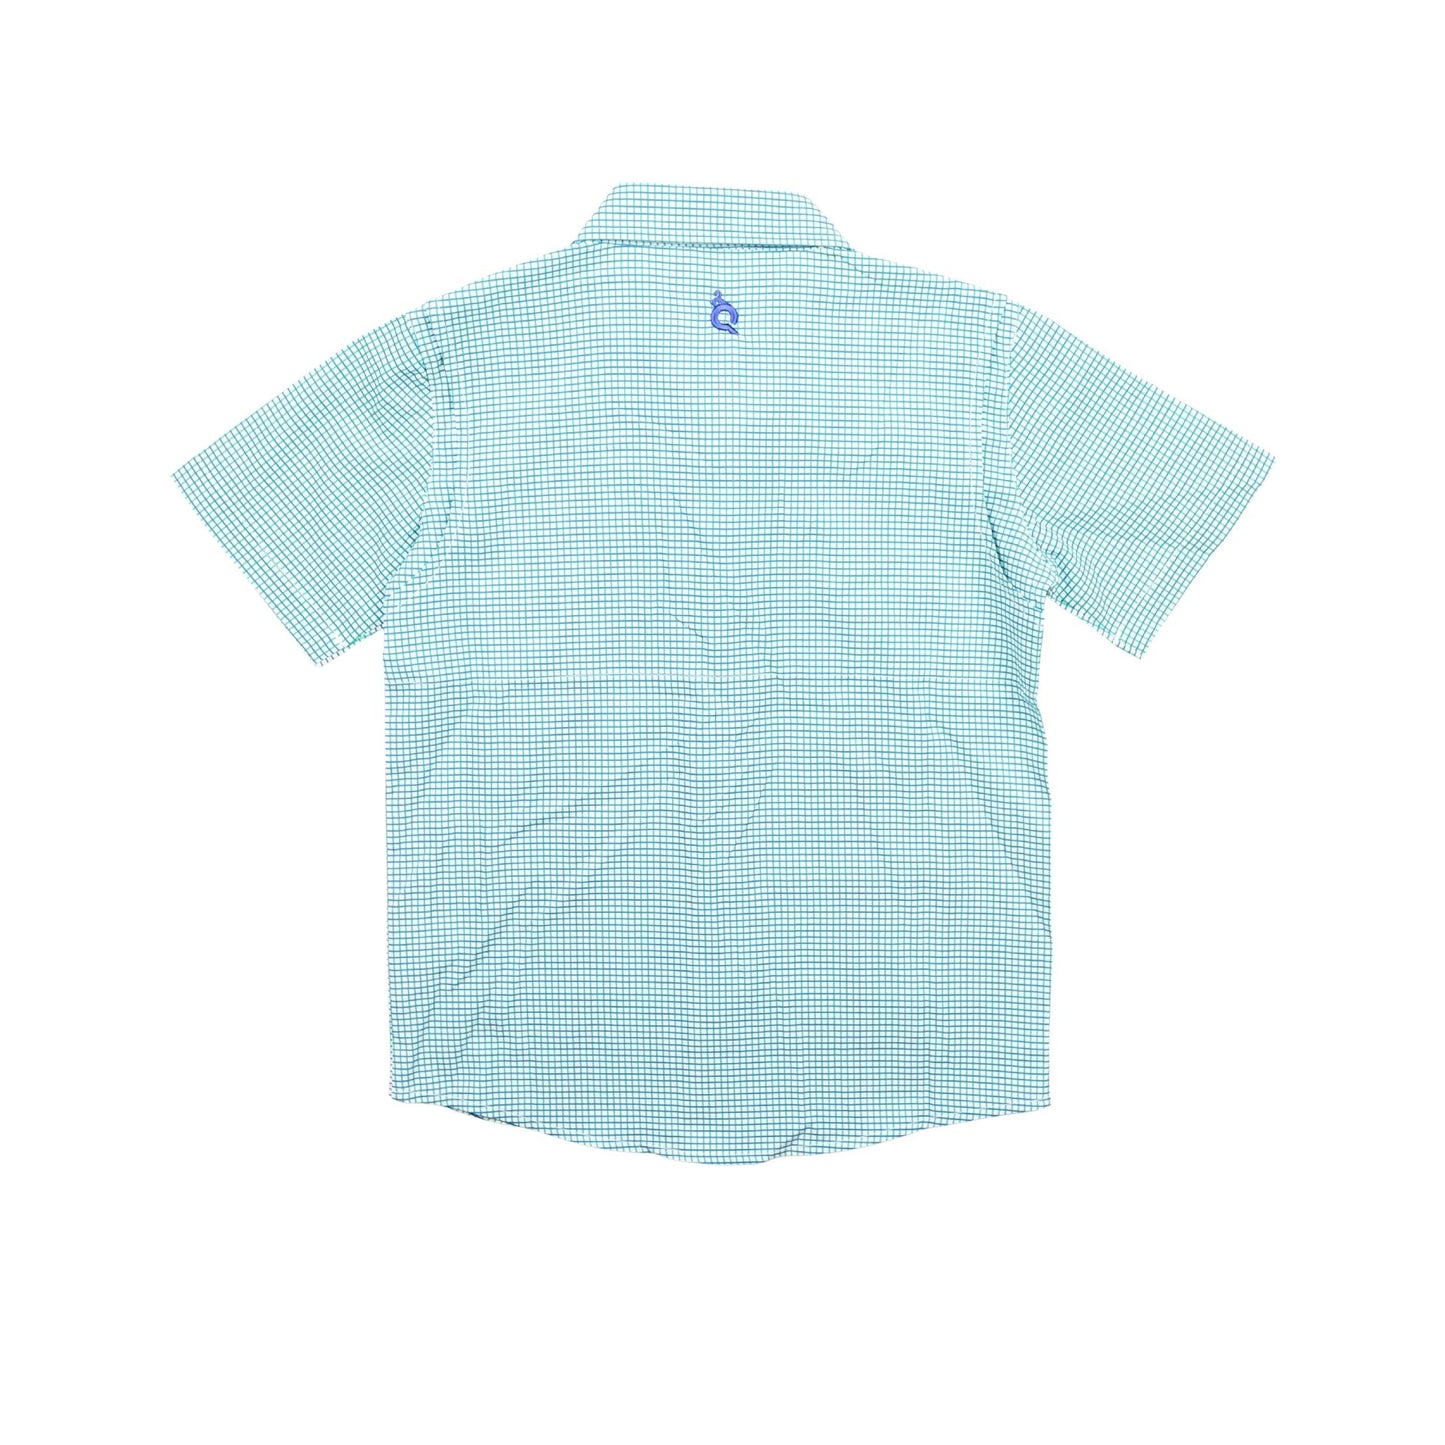 Guayabera - Navy/Jade Check Short Sleeve Shirt